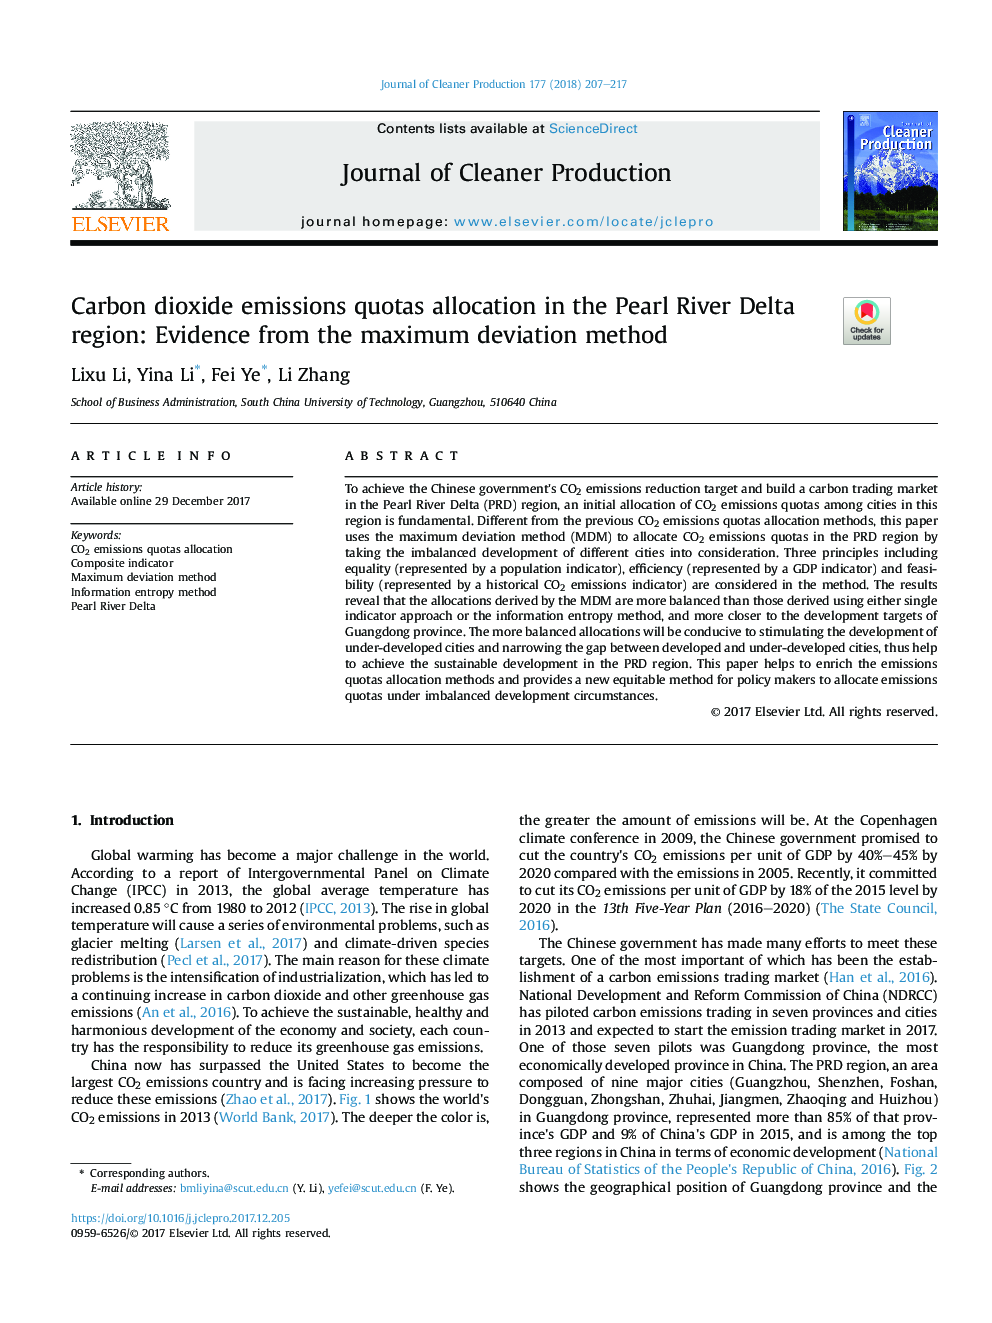 تخصیص مجوزهای گاز دی اکسید کربن در منطقه دلتای رودخانه مروارید: شواهد از روش حداکثر انحراف 